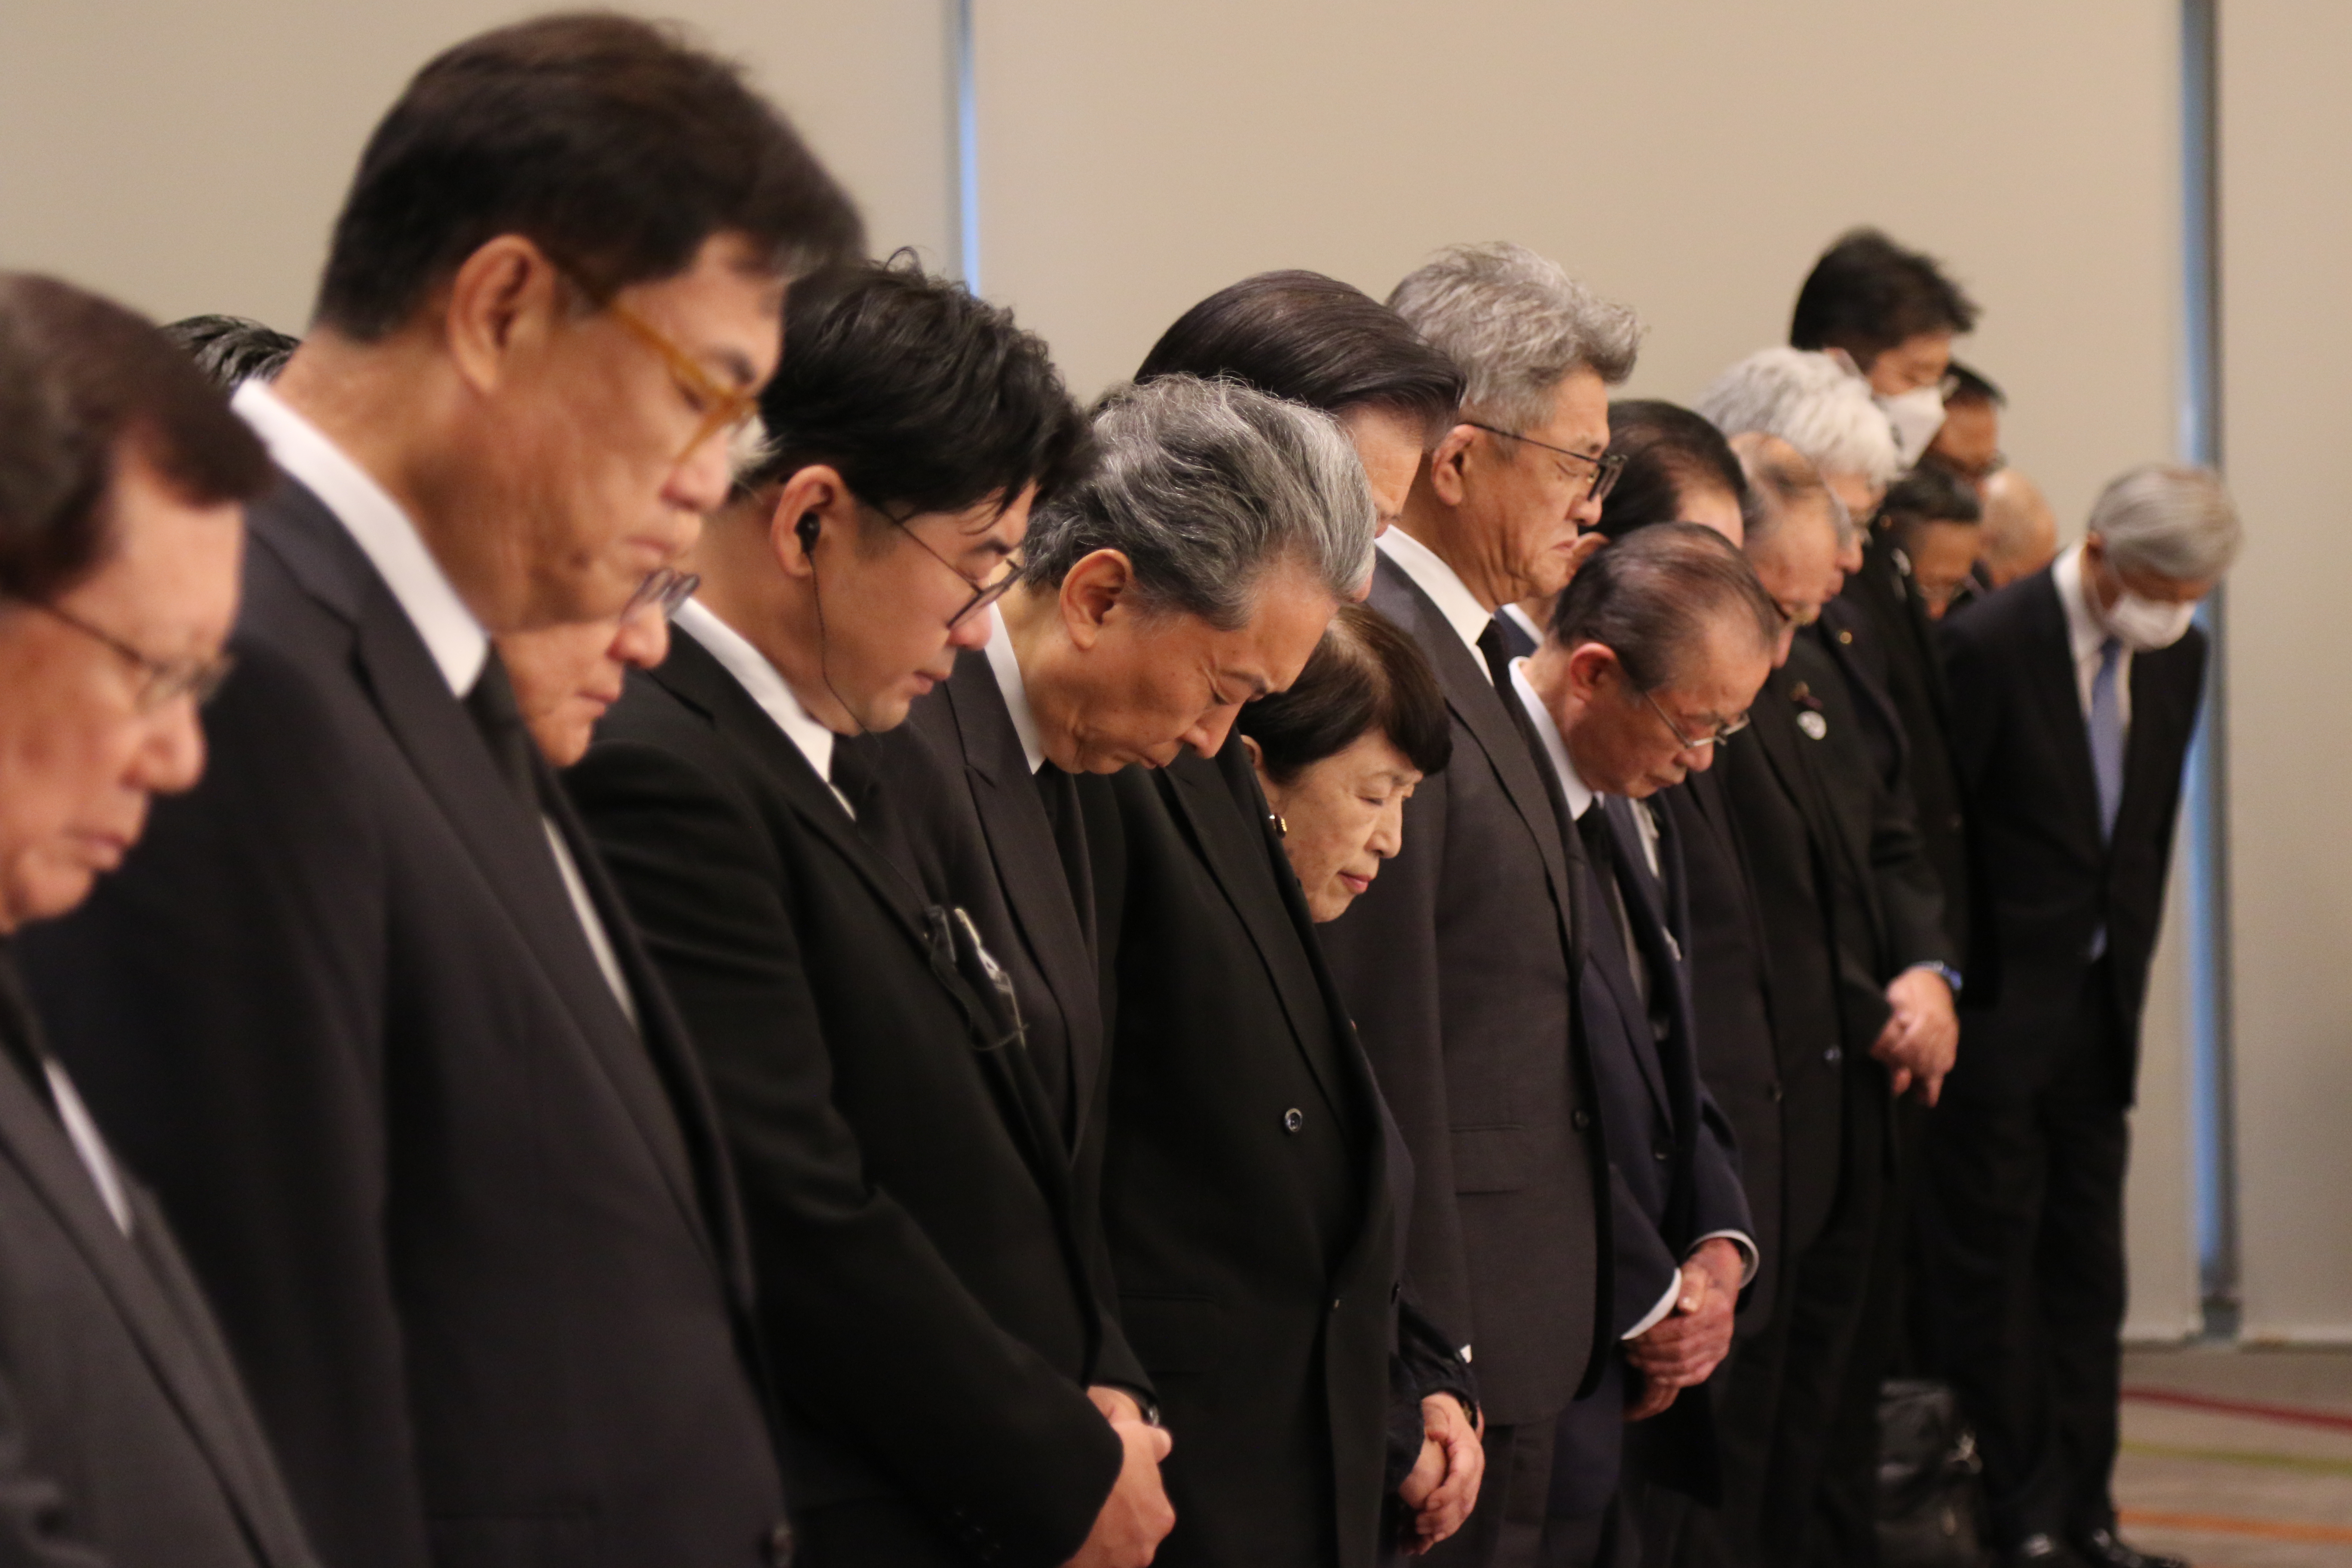 1일 오전 일본 도쿄에서 열린 ‘제100주년 한국인 순난자 추념식’에서 하토야마 유키오(사진 가운데) 전 일본 총리가 묵념하고 있다      도쿄=연합뉴스